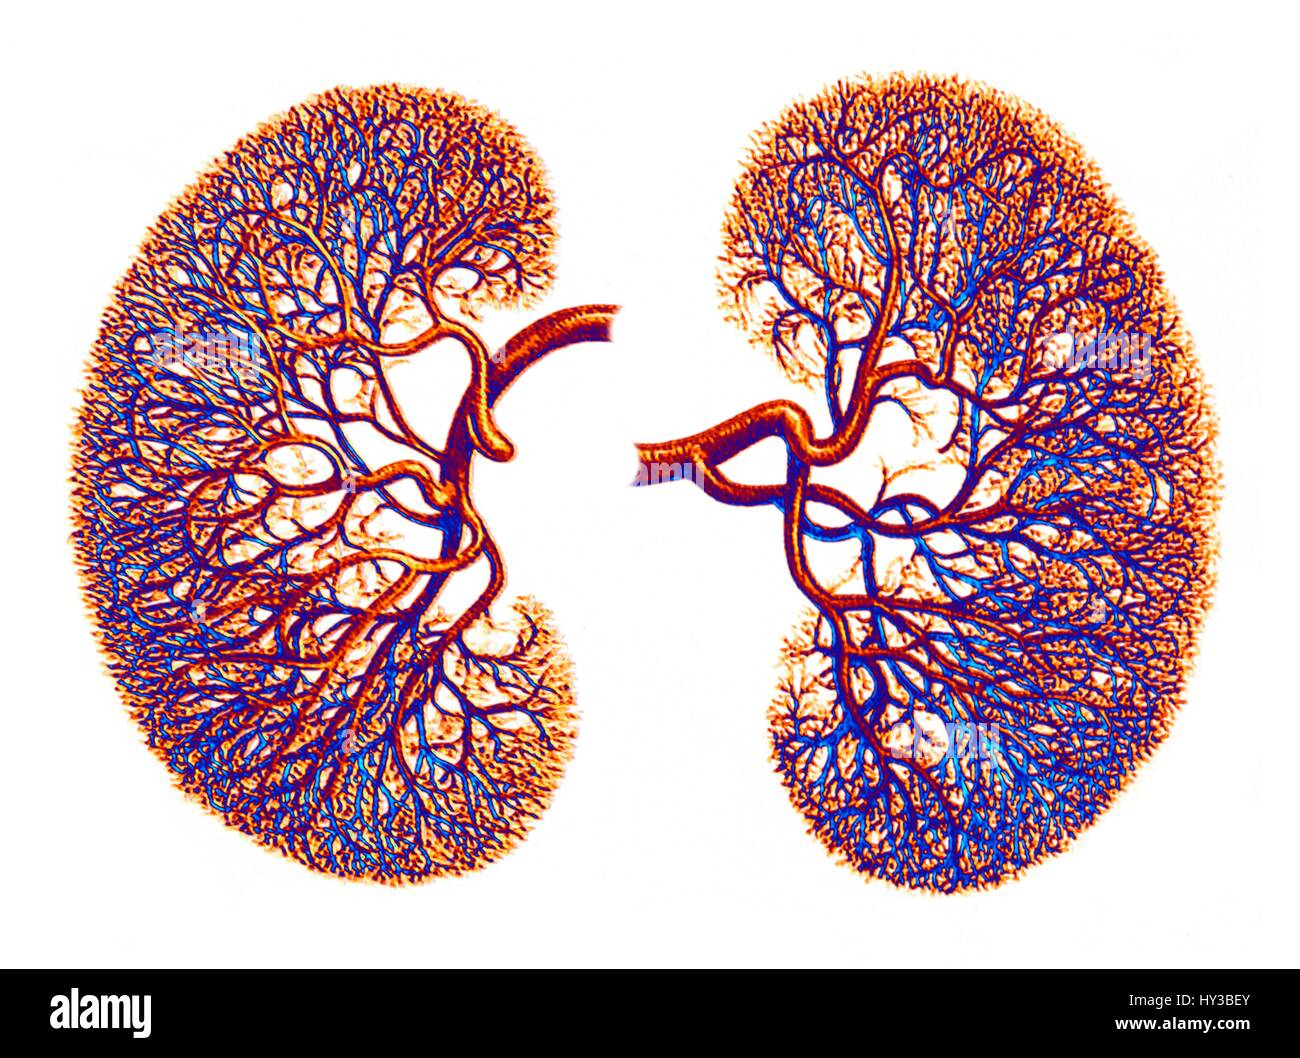 L'oeuvre de l'ordinateur de l'approvisionnement en sang pour les reins, montrant le dense réseau de capillaires résultant des divisions d'une artère rénale. Banque D'Images